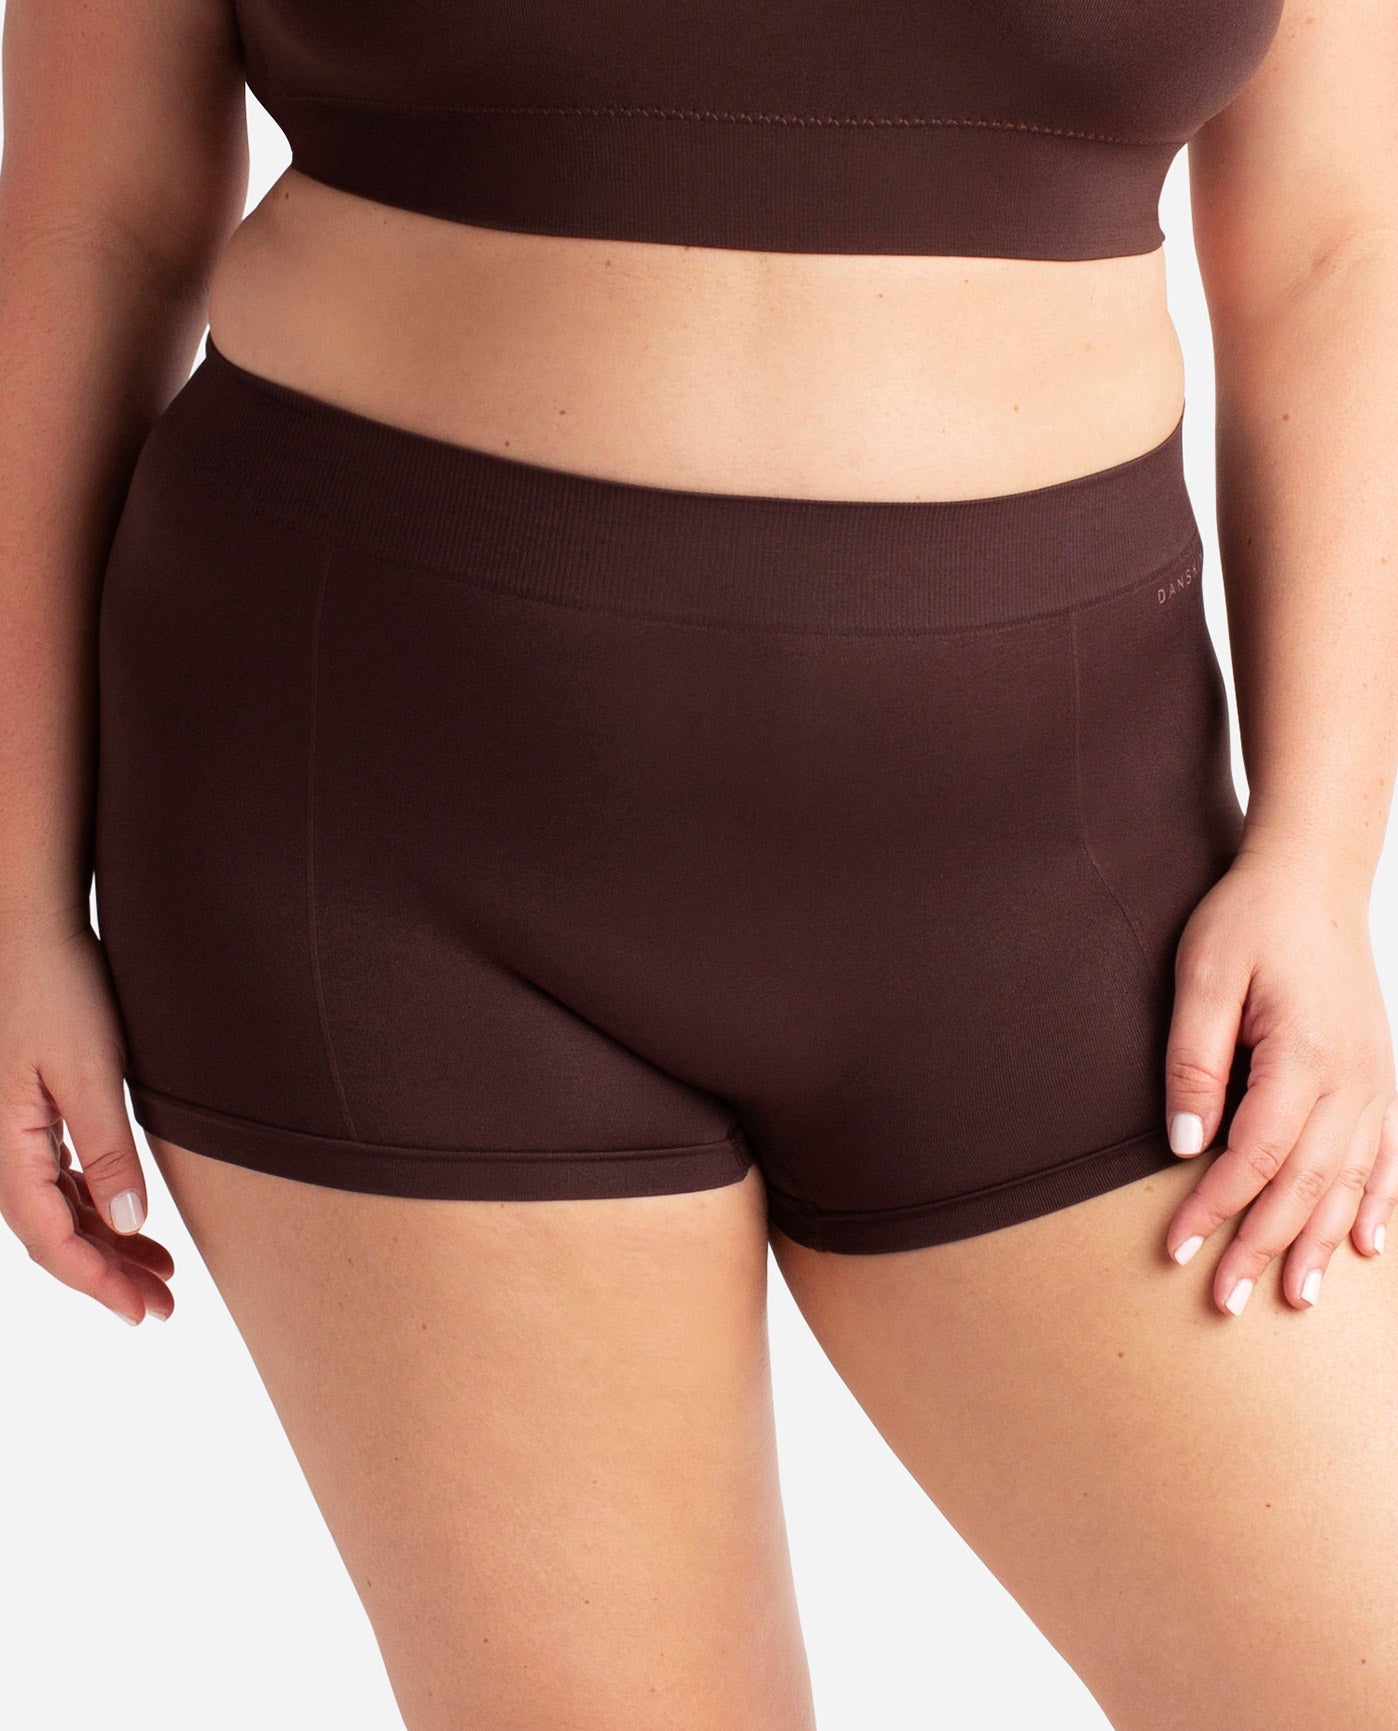 Danskin Intimates 3 PK-Size XL- recycled seamless Underwear. NWT